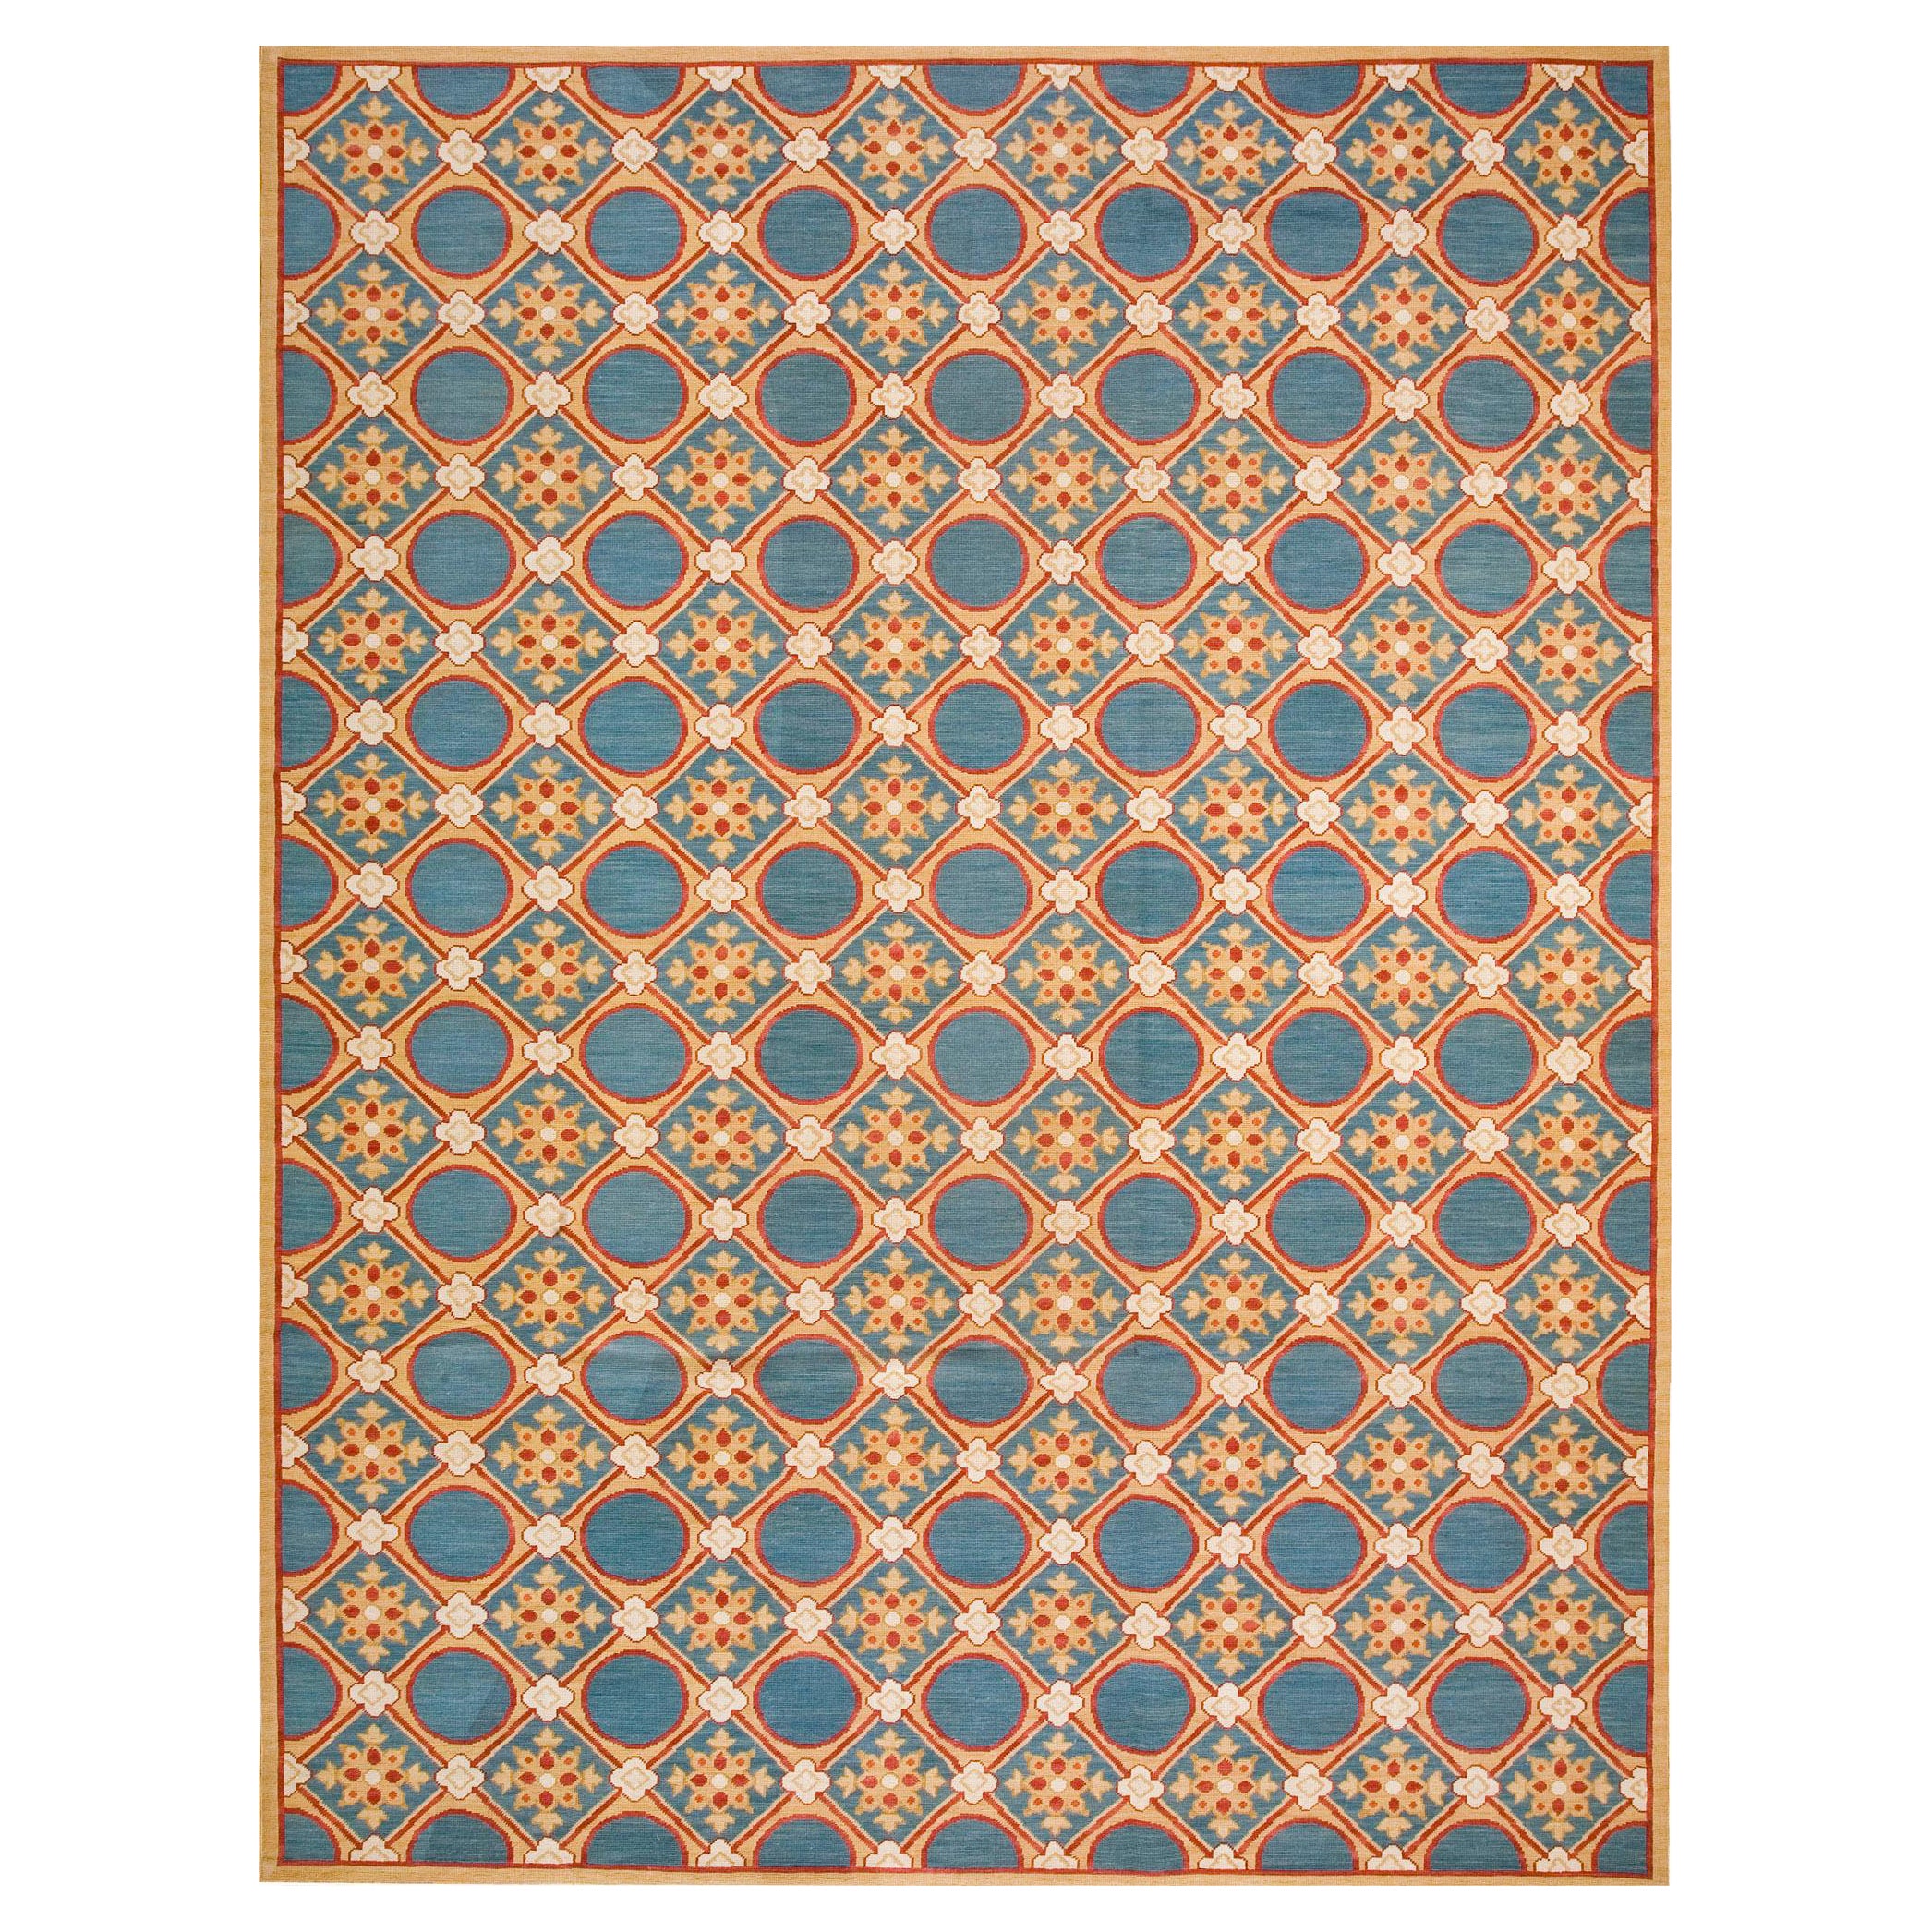  Zeitgenössischer handgewebter Flachgewebe-Teppich mit Gobelinstickerei ( 9' x 12' - 275 x 365 cm 